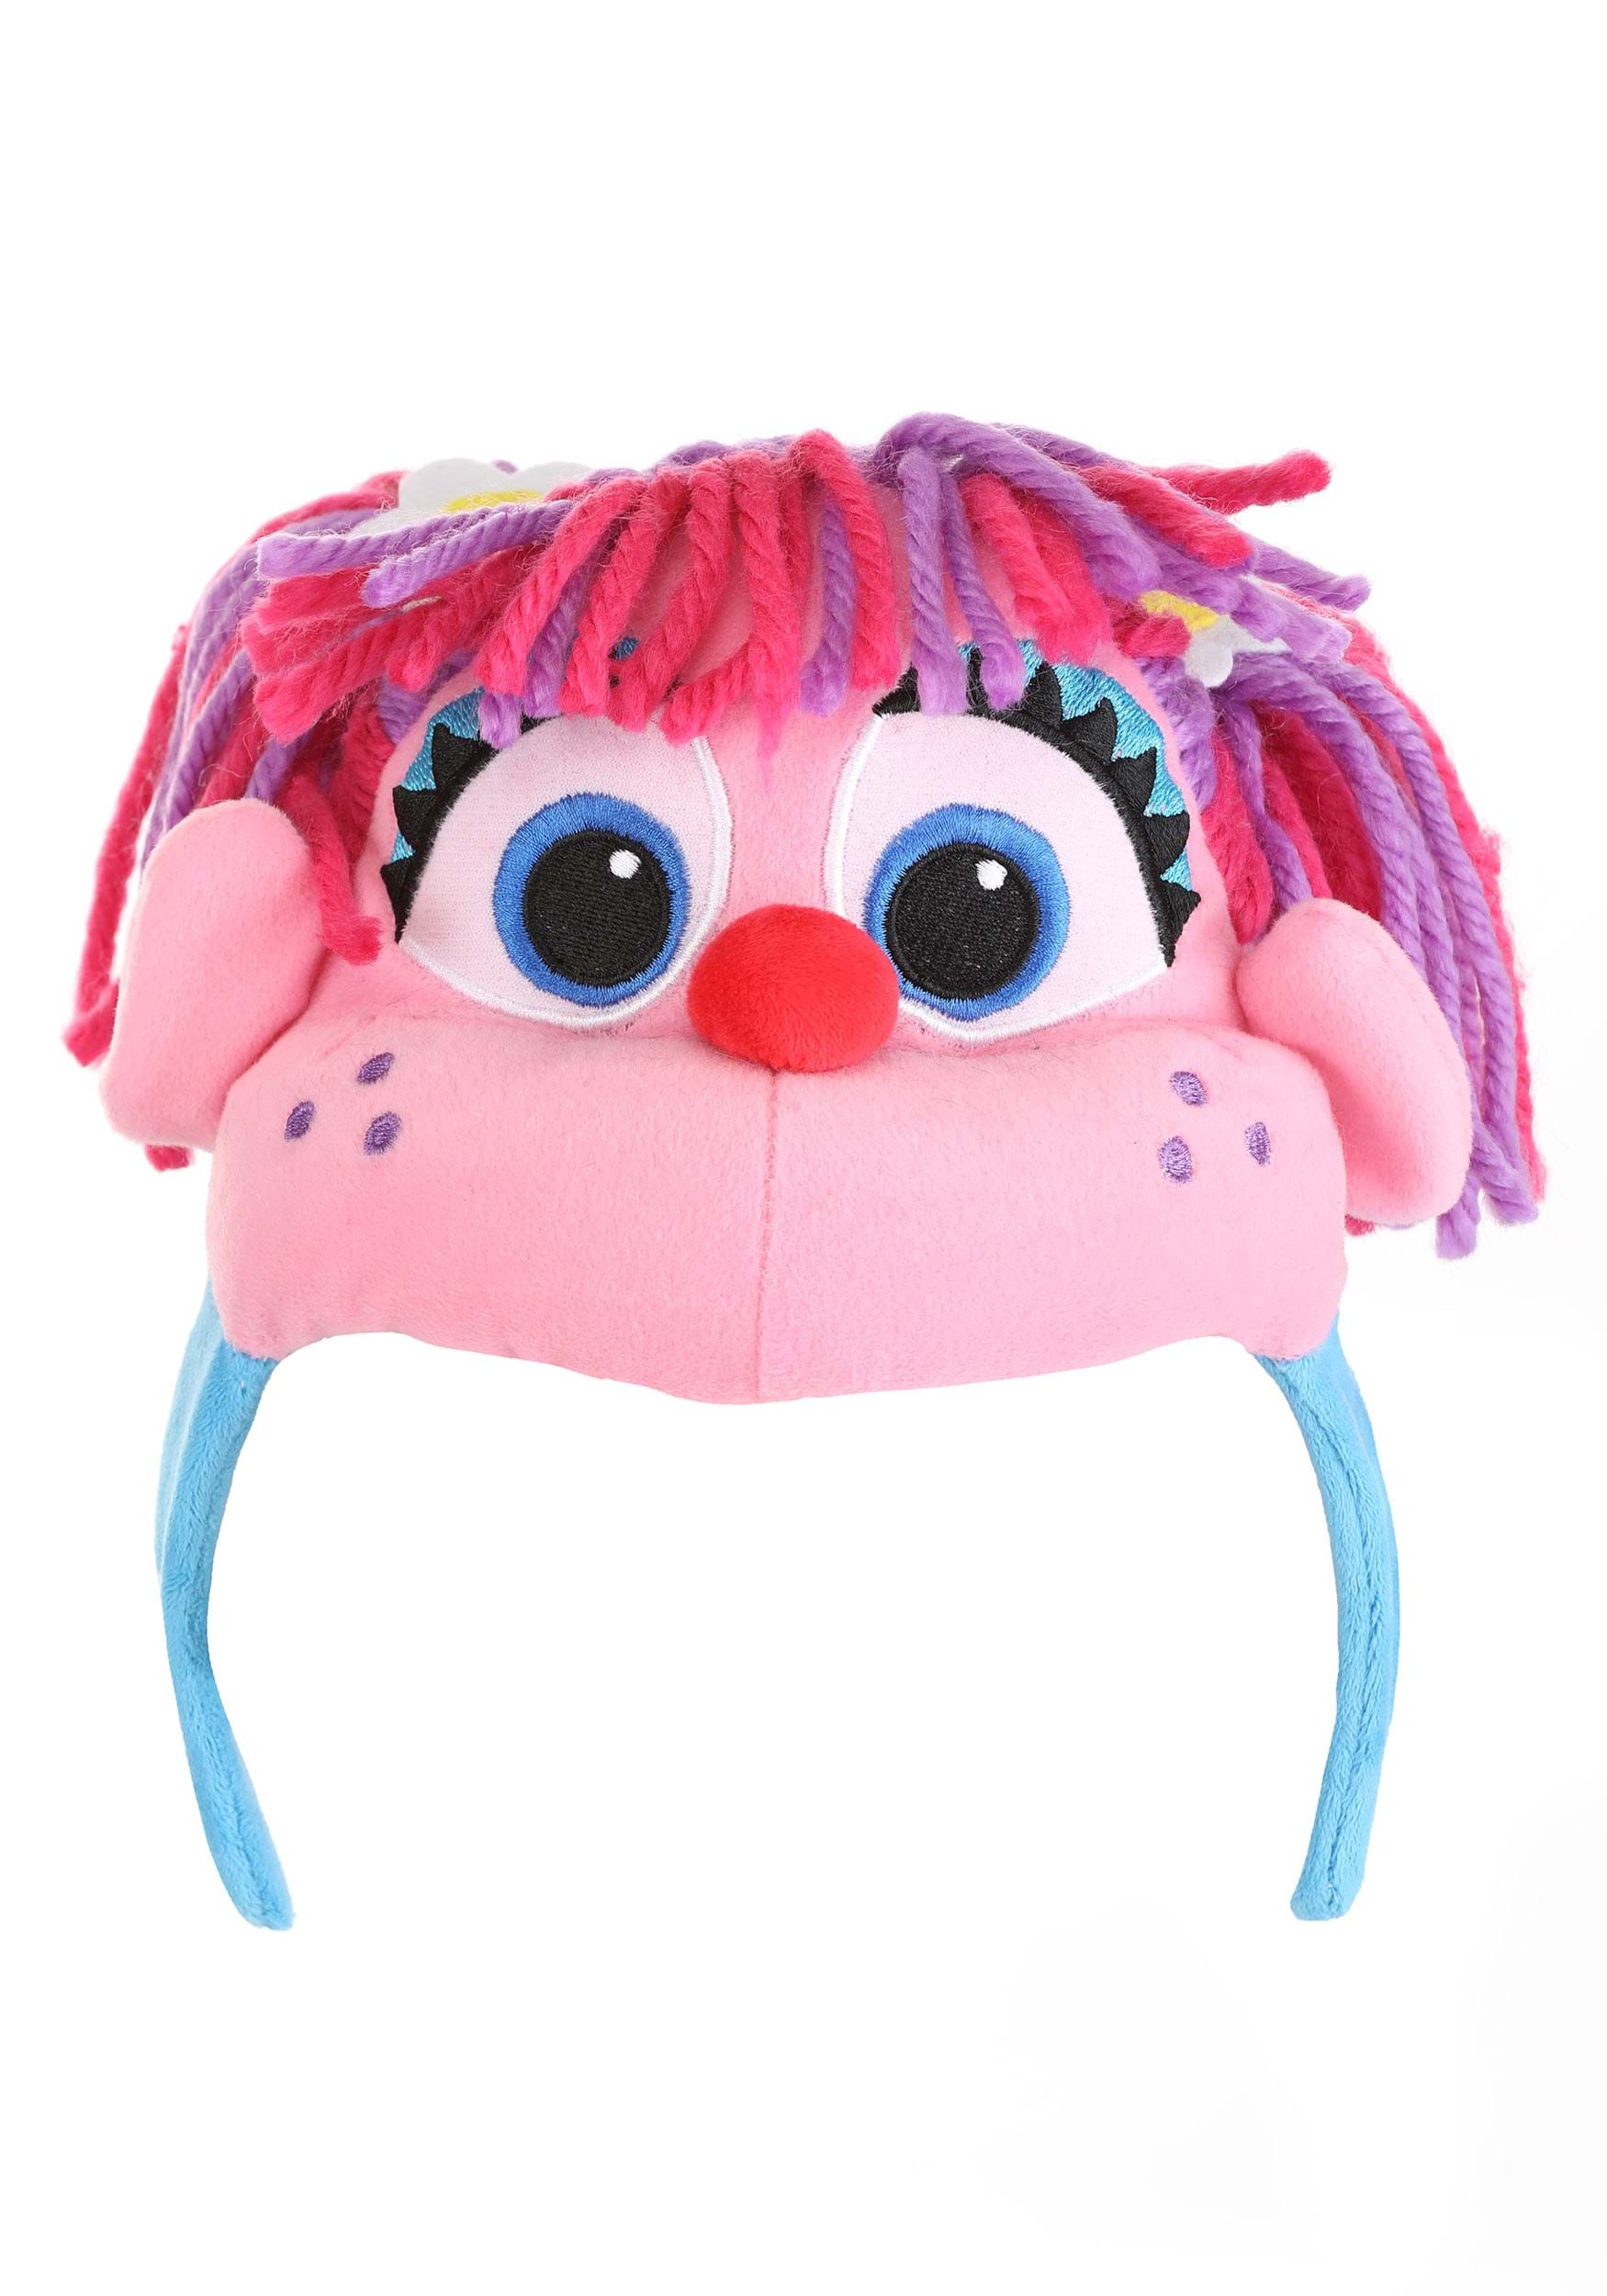 Abby Cadabby Face Headband Costume